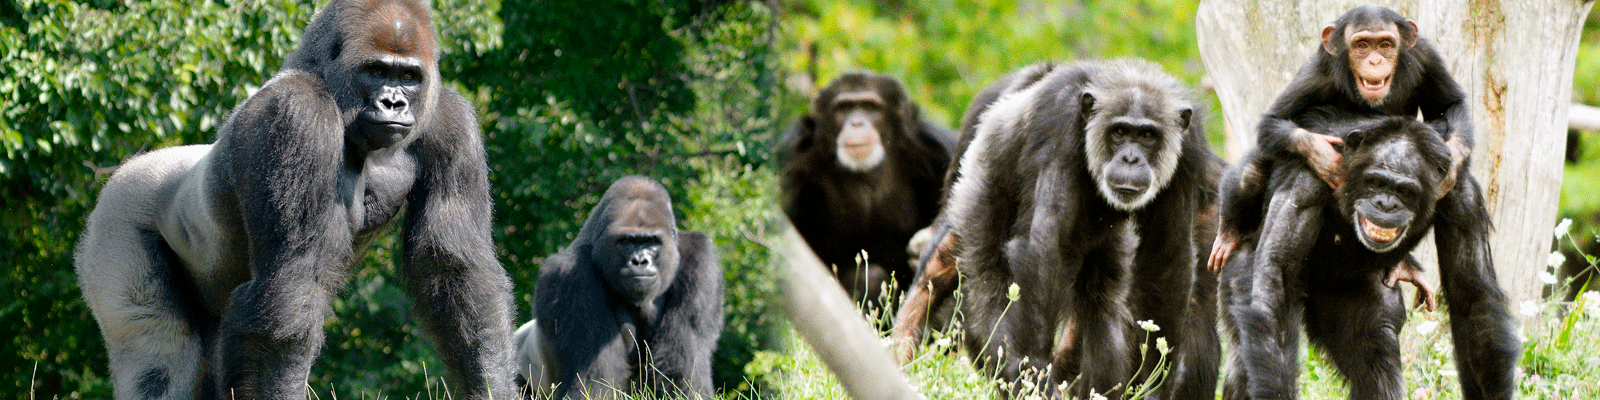 Gorillas and chimpanzees